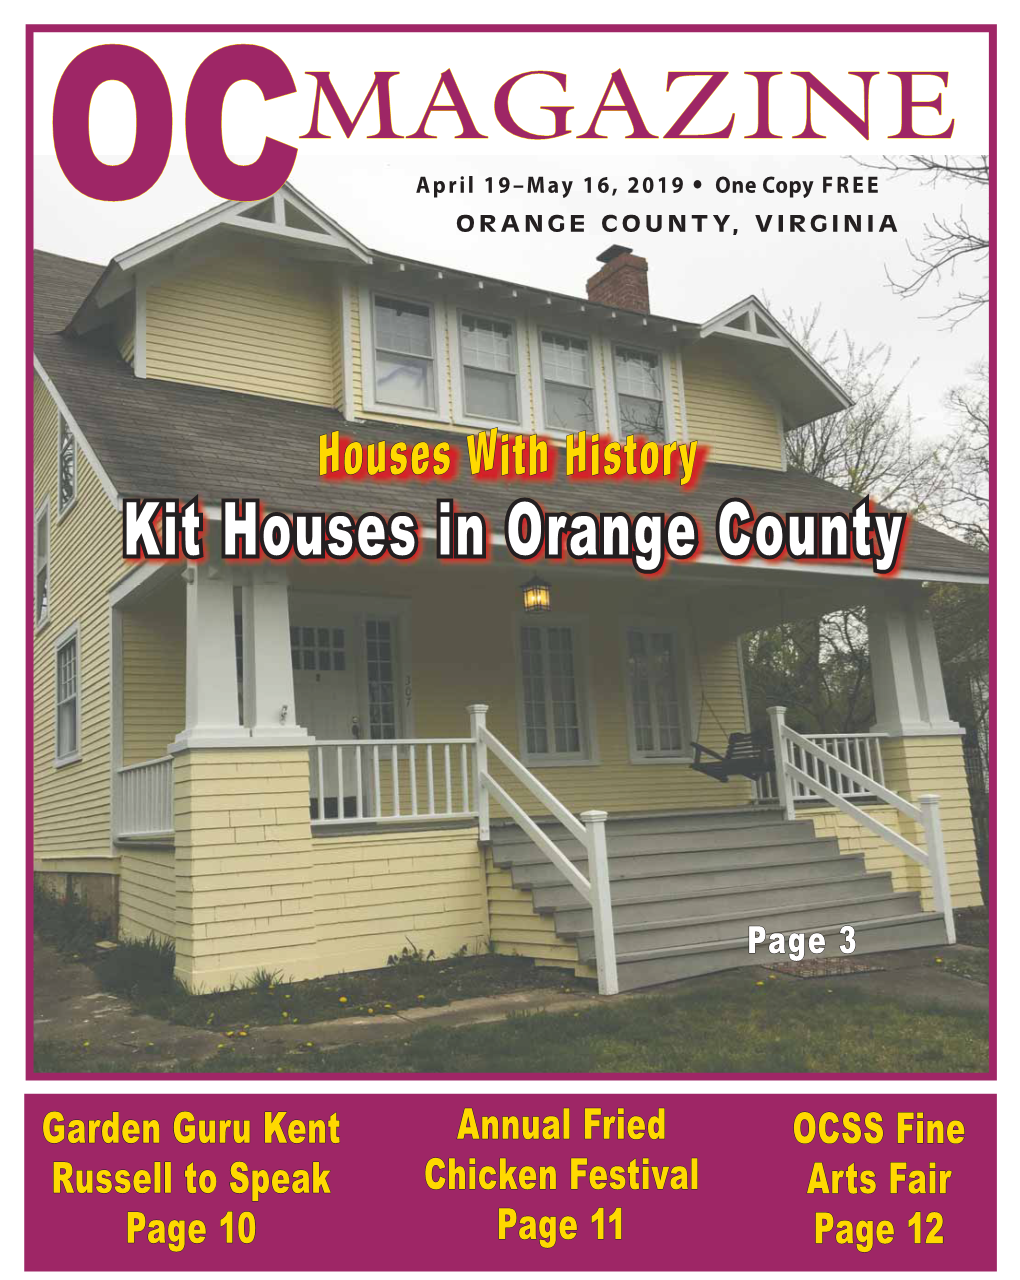 Kit Houses in Orange County